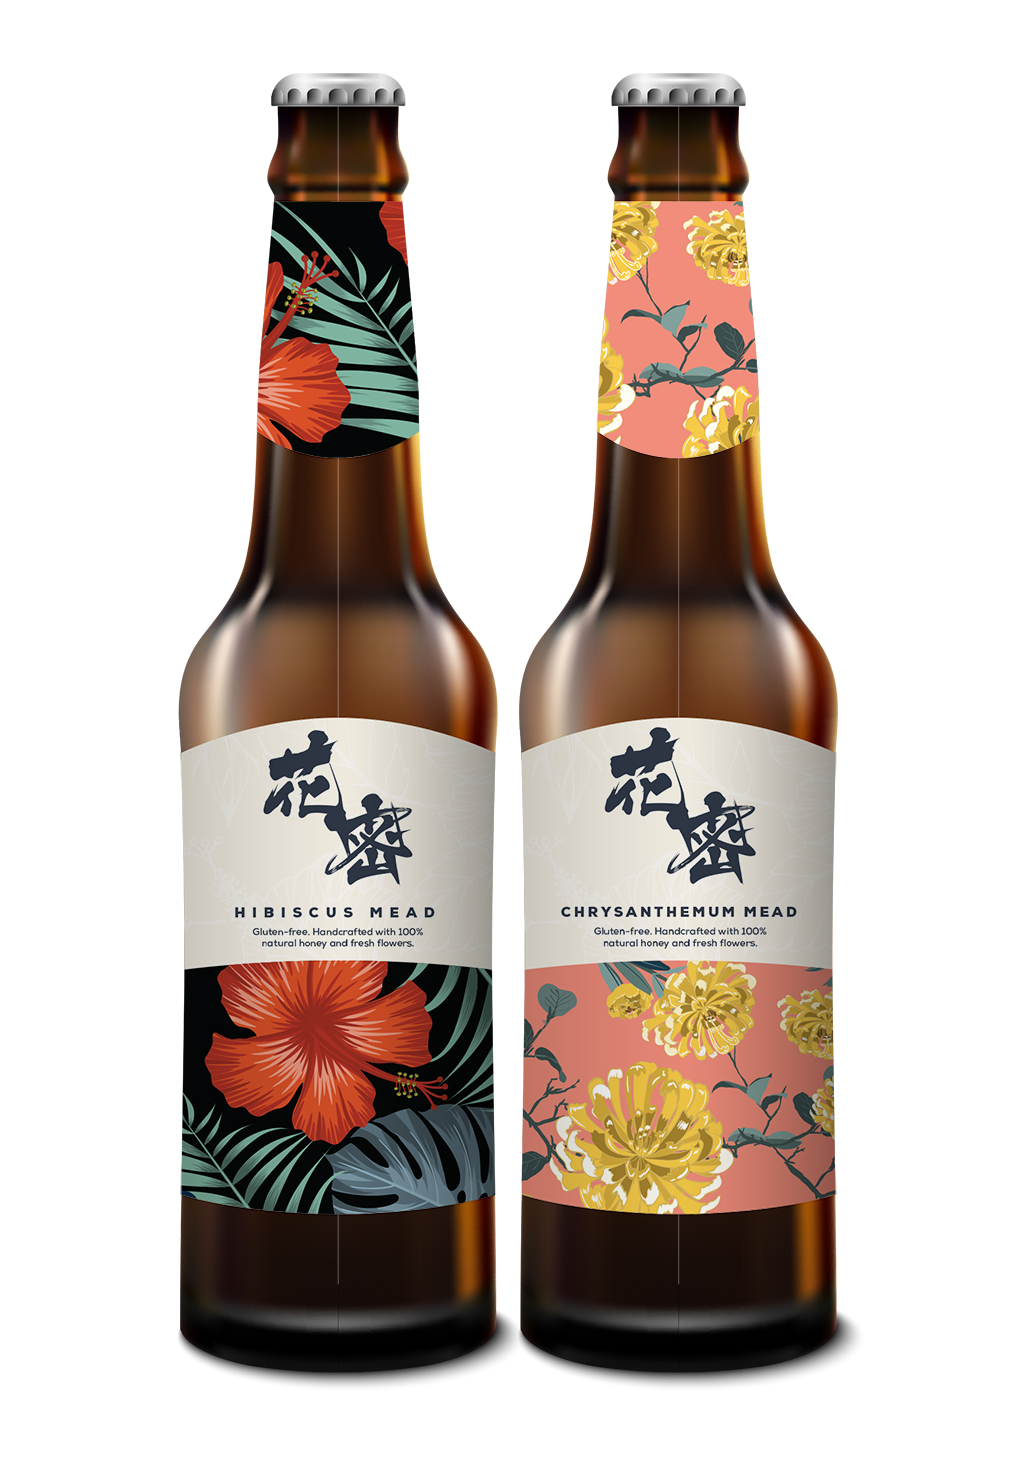 Final Label design for a floral beer bottle